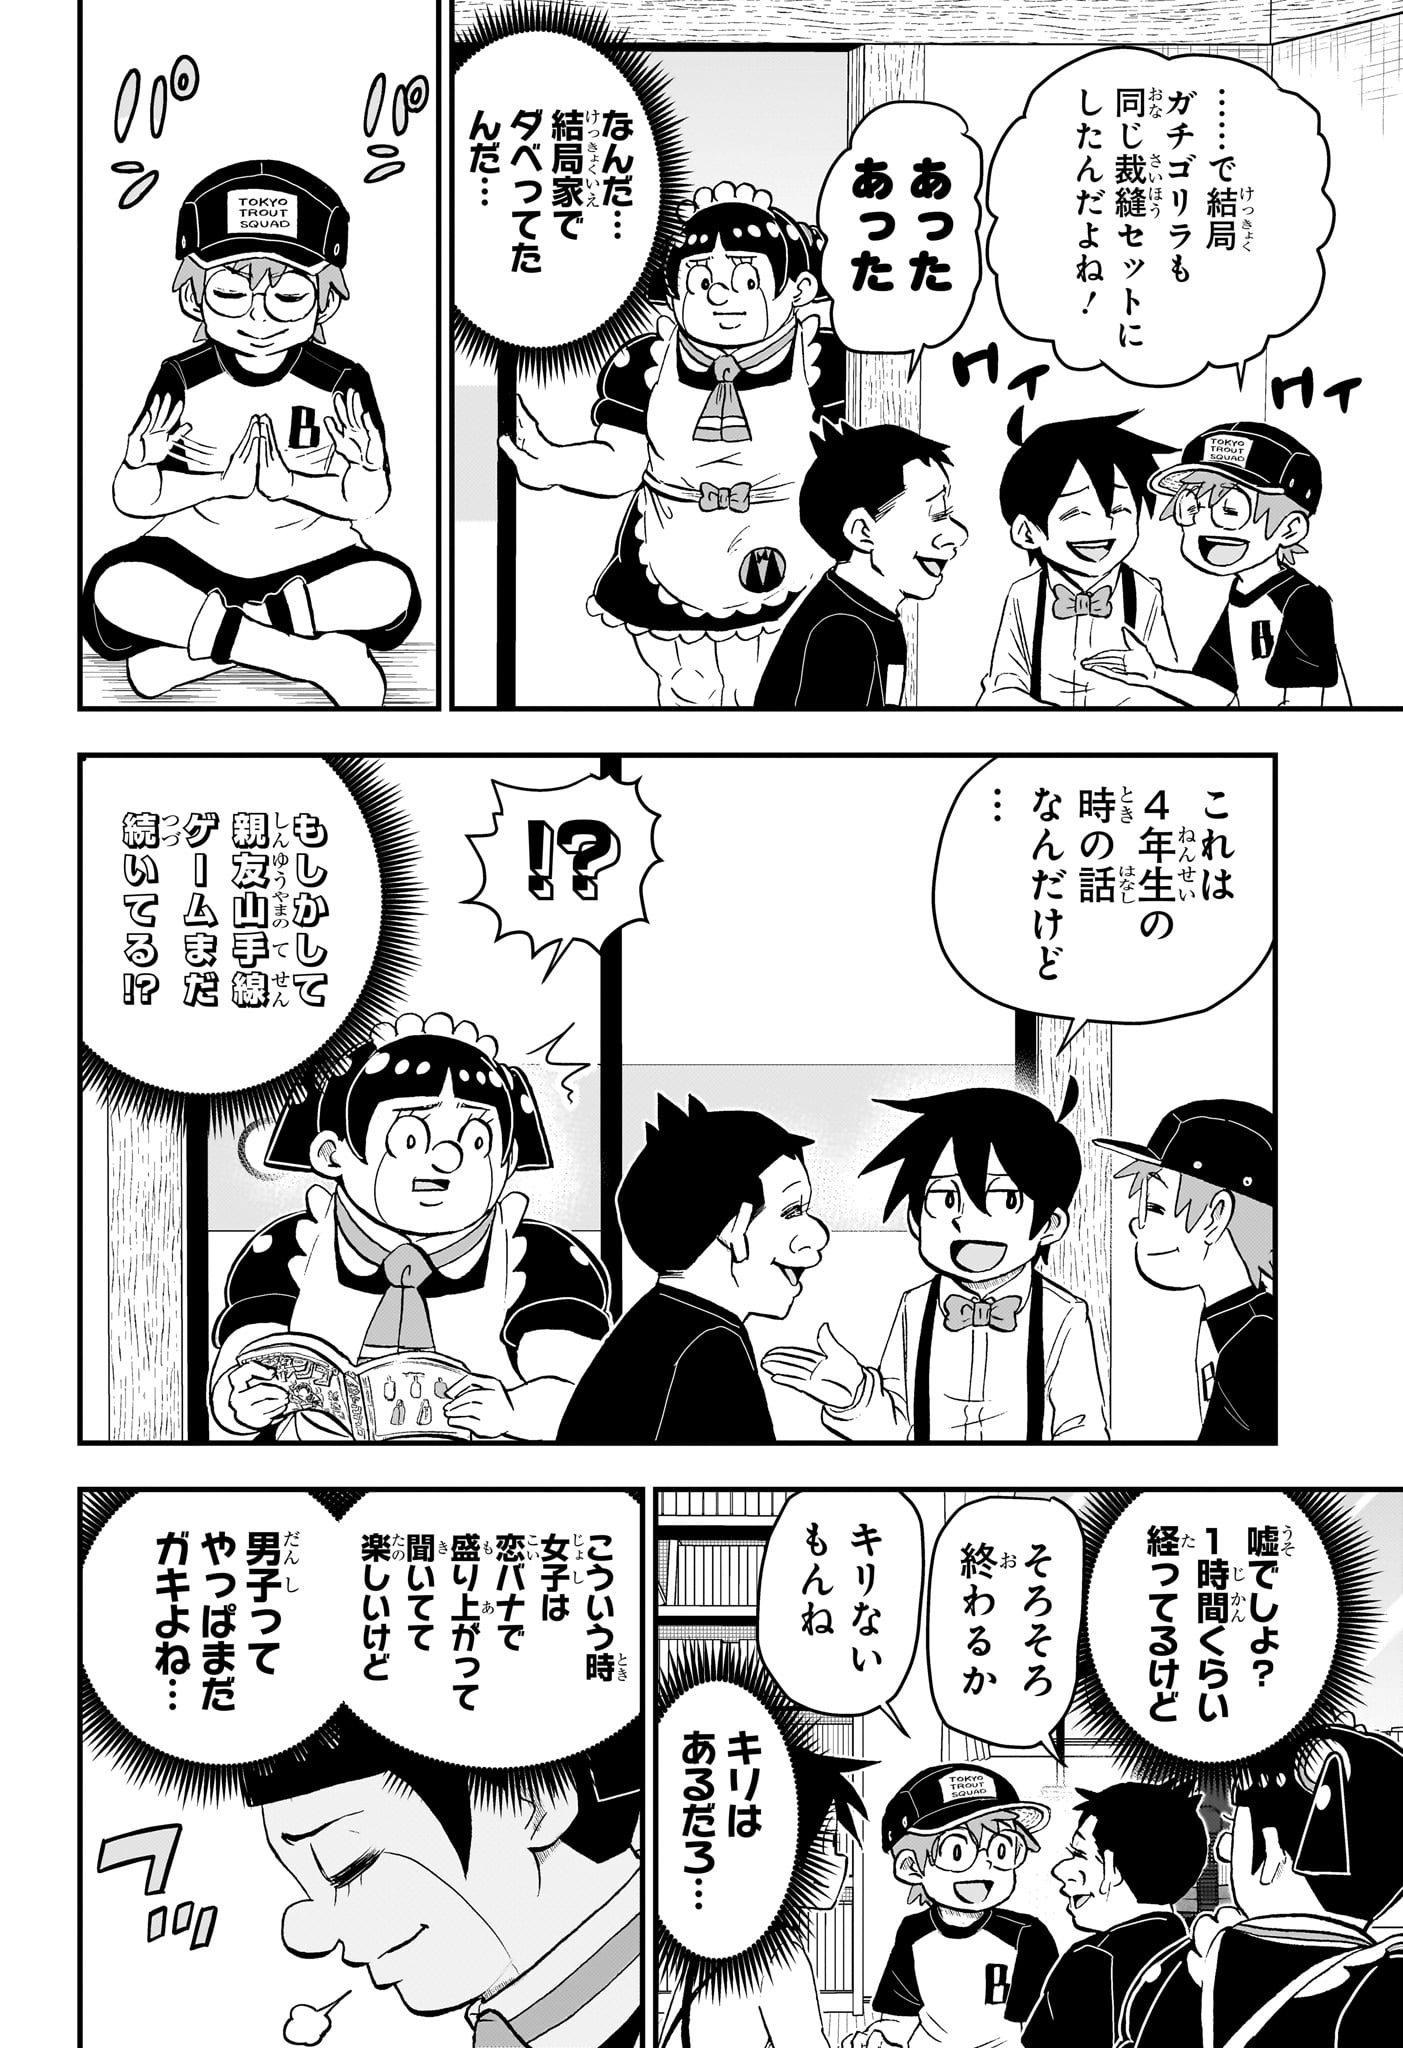 Boku to Roboko - Chapter 186 - Page 8